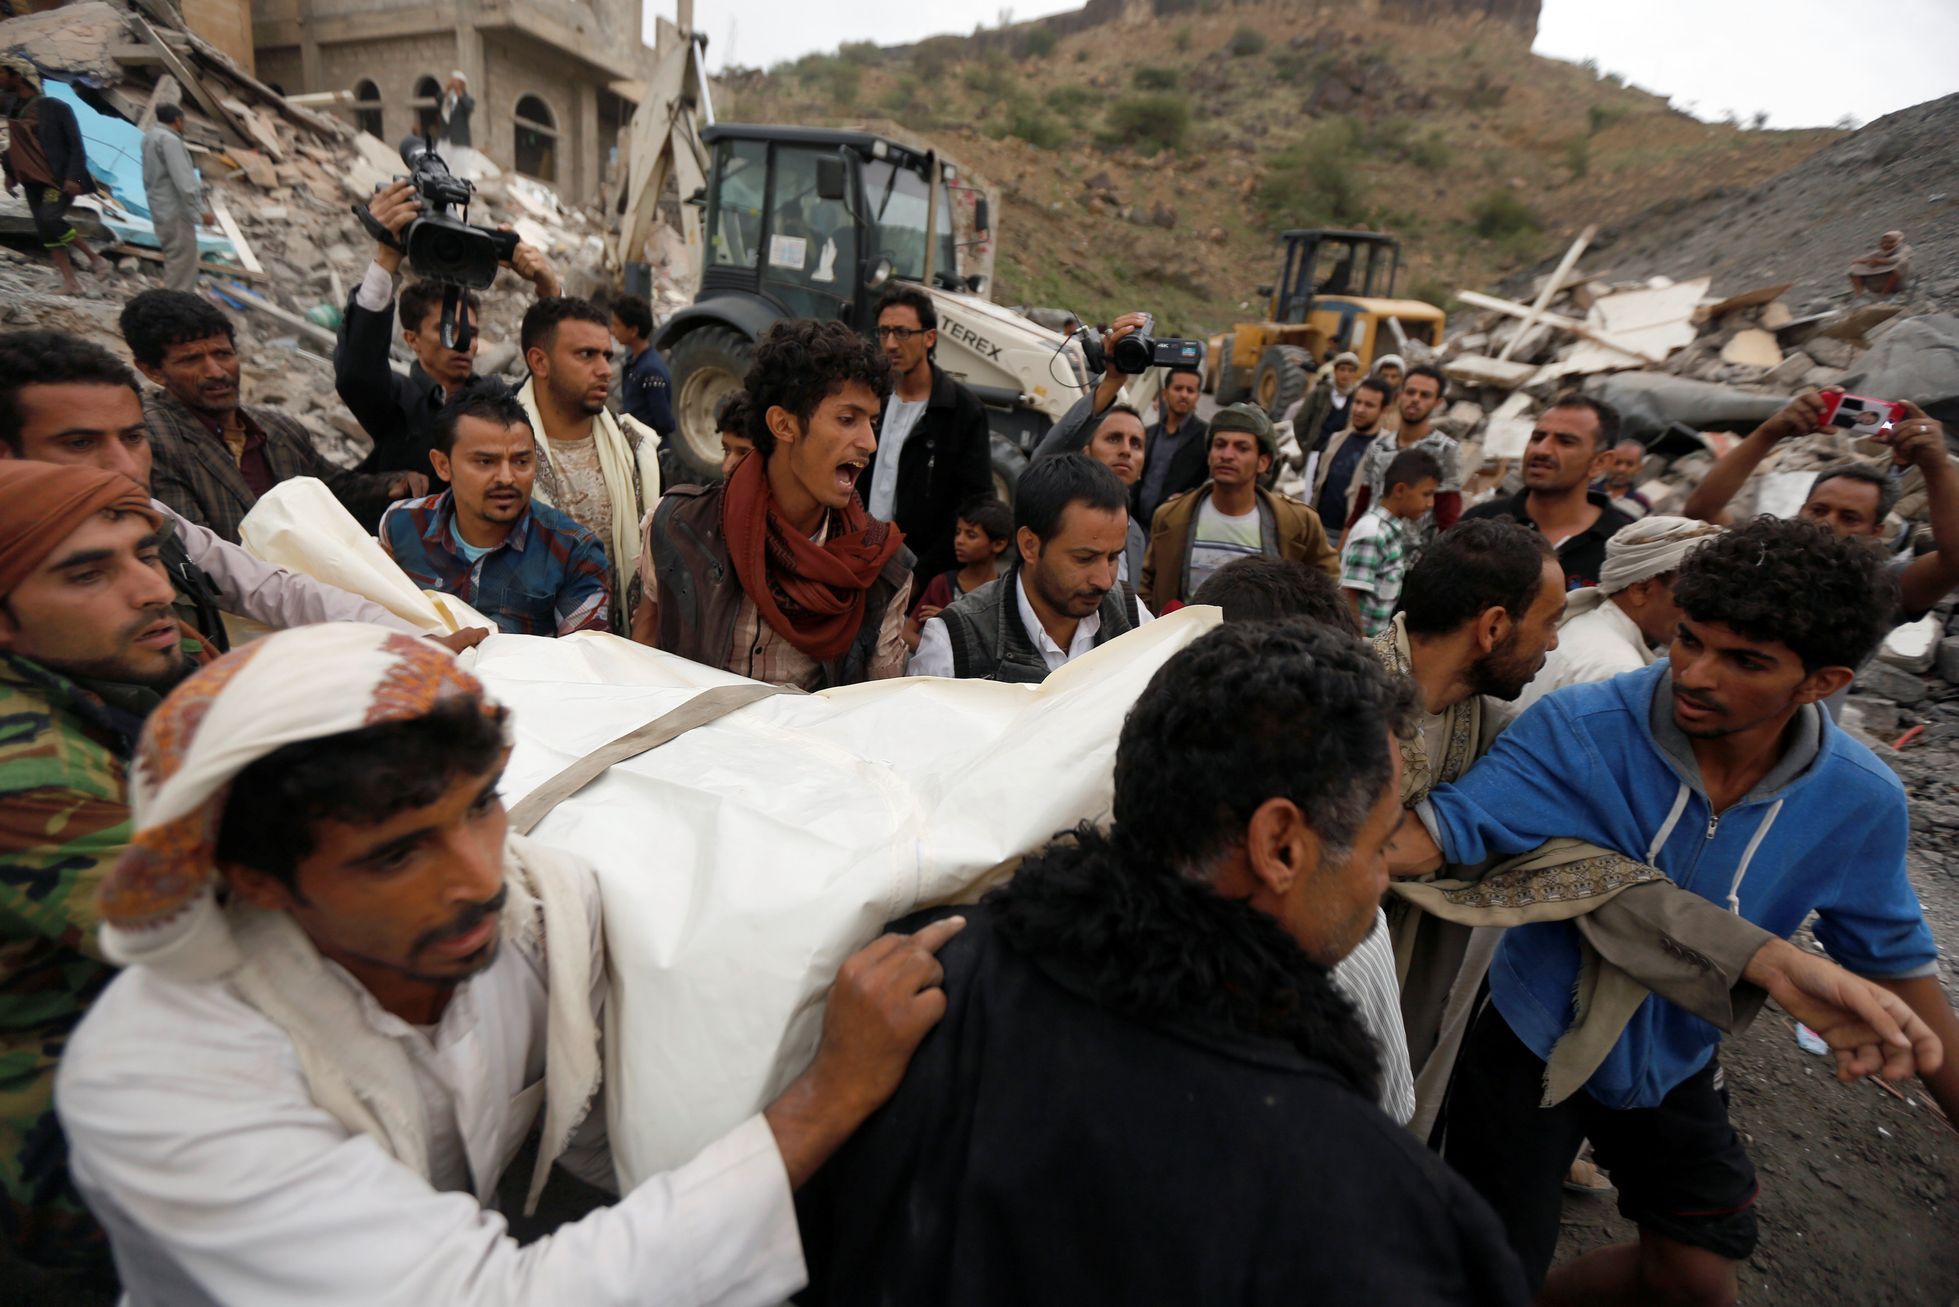 Lidé odnášejí oběti po náletu v Jemenu.